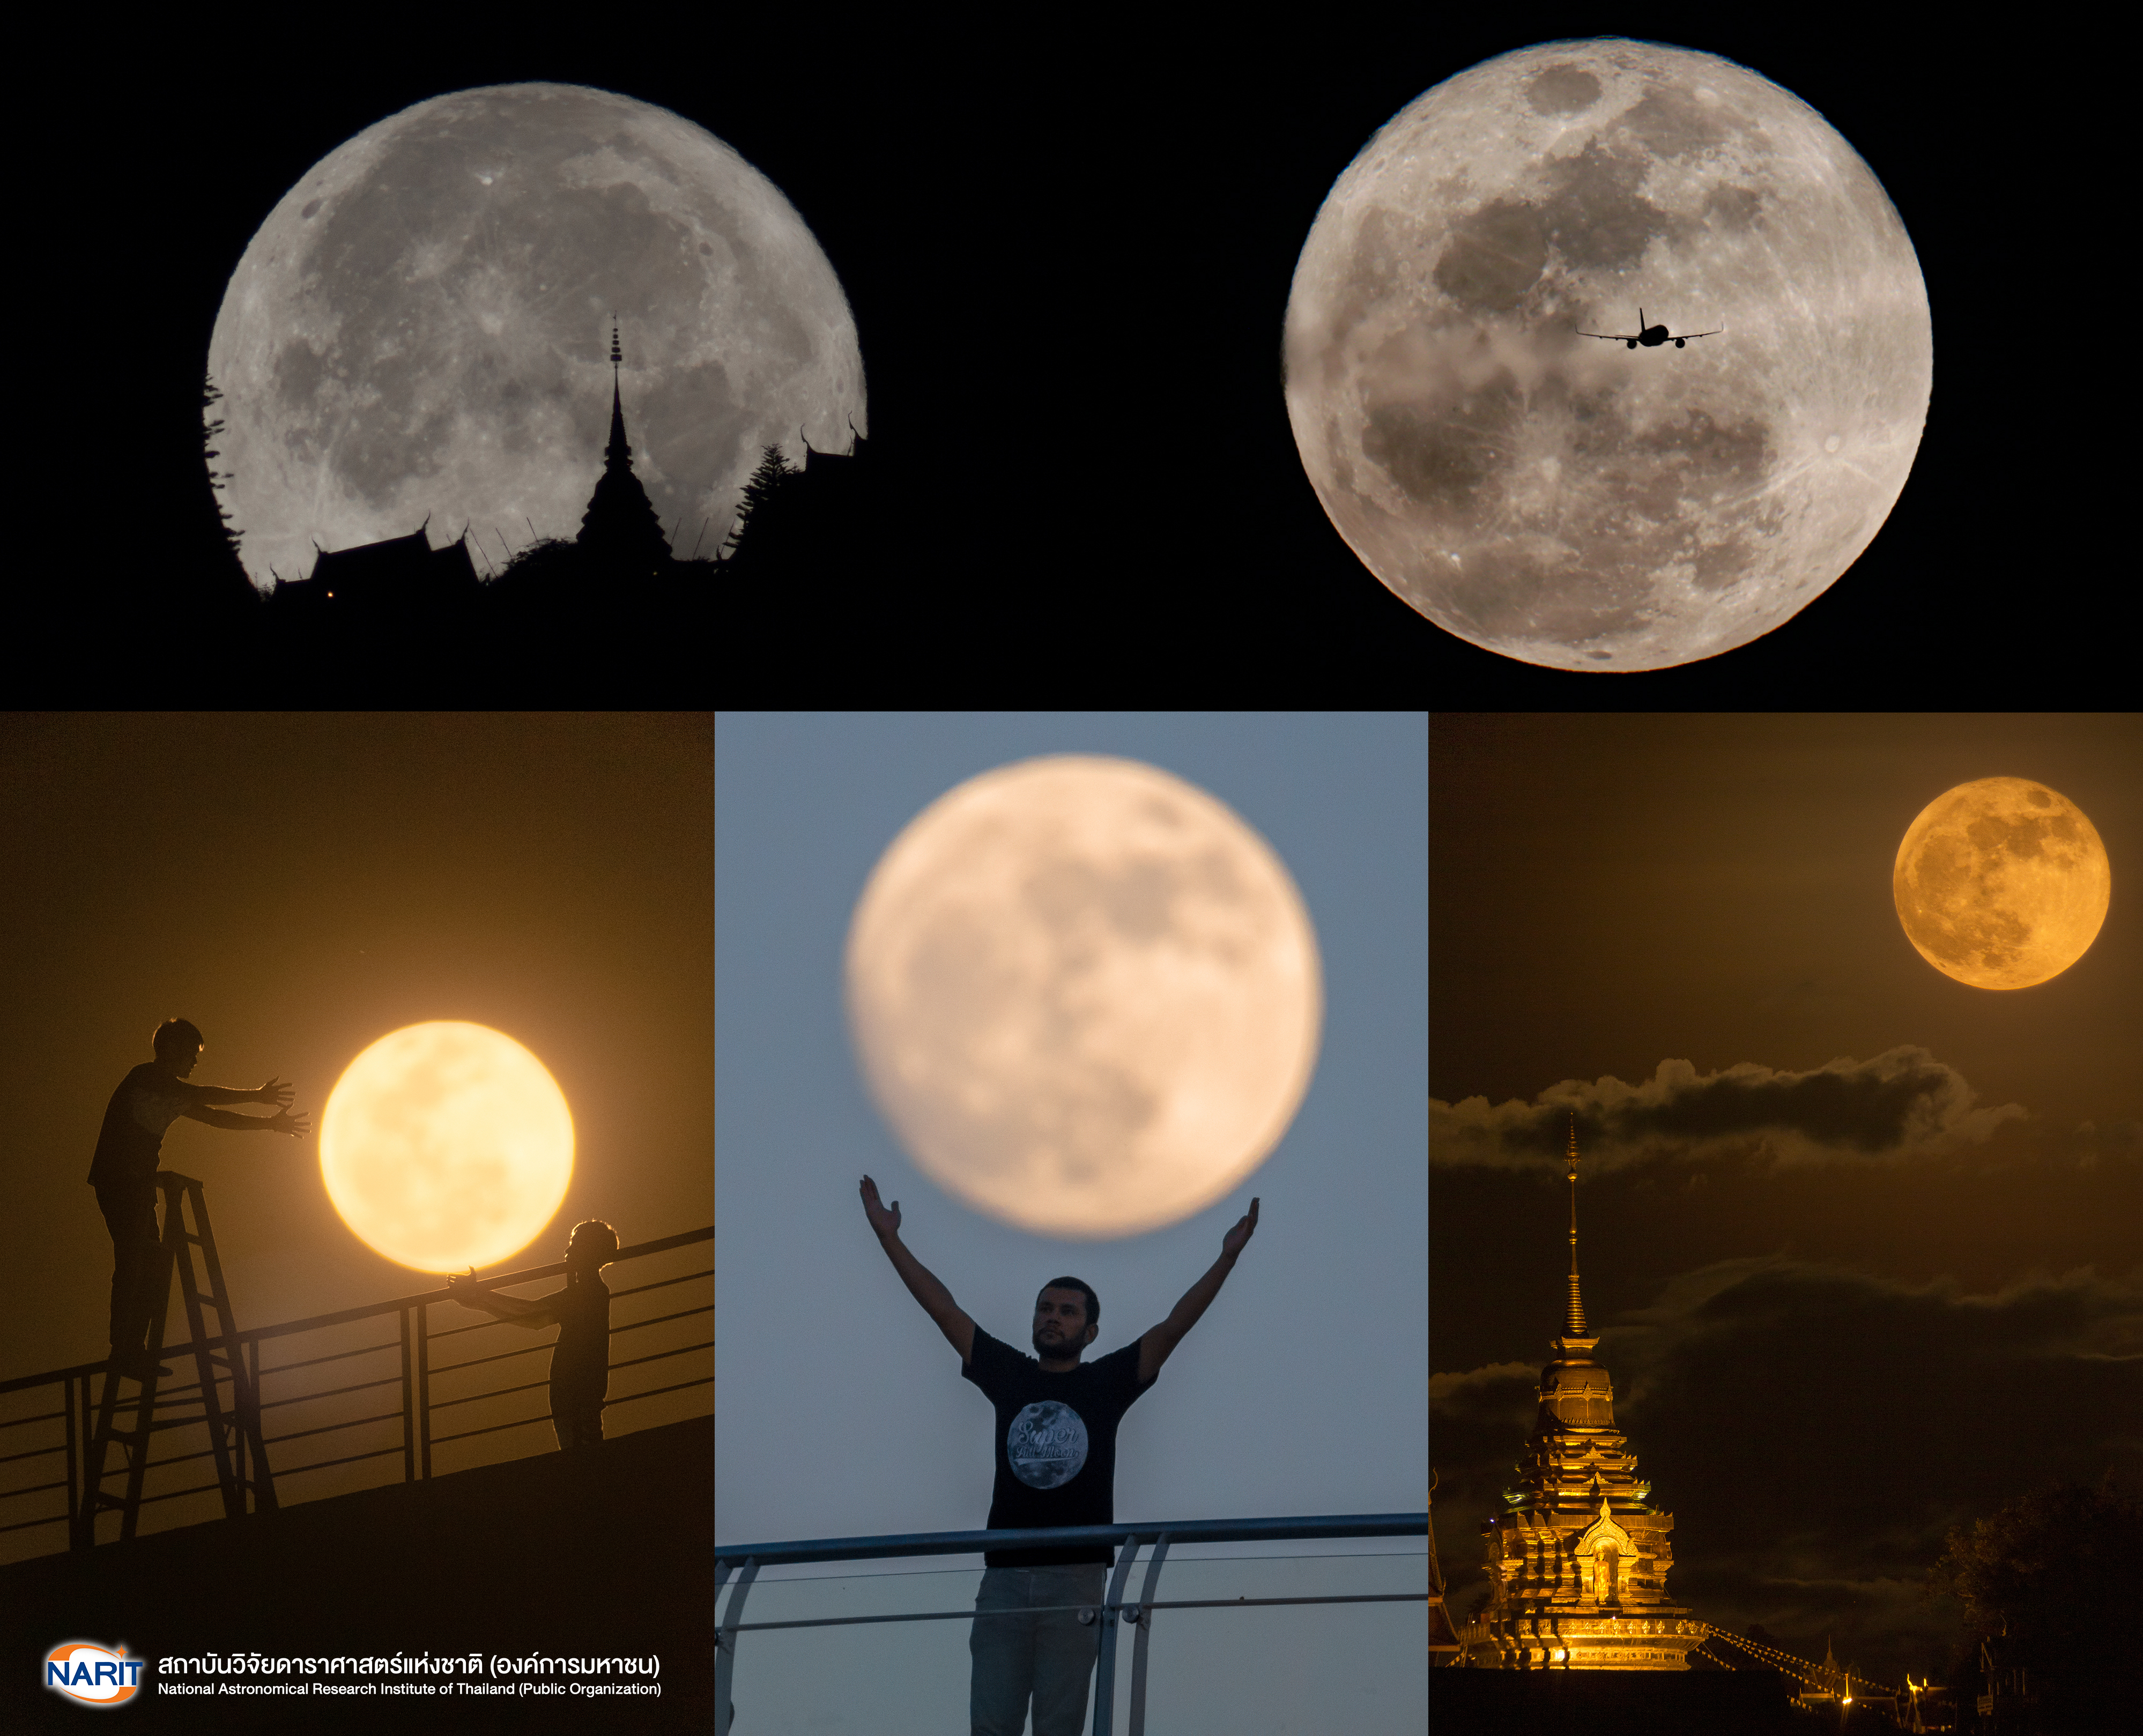 เตรียมกล้องให้พร้อม! รอถ่ายภาพจันทร์เต็มดวงใหญ่ที่สุดในรอบปี“ซูเปอร์ฟูลมูน”  27 เมษายนนี้